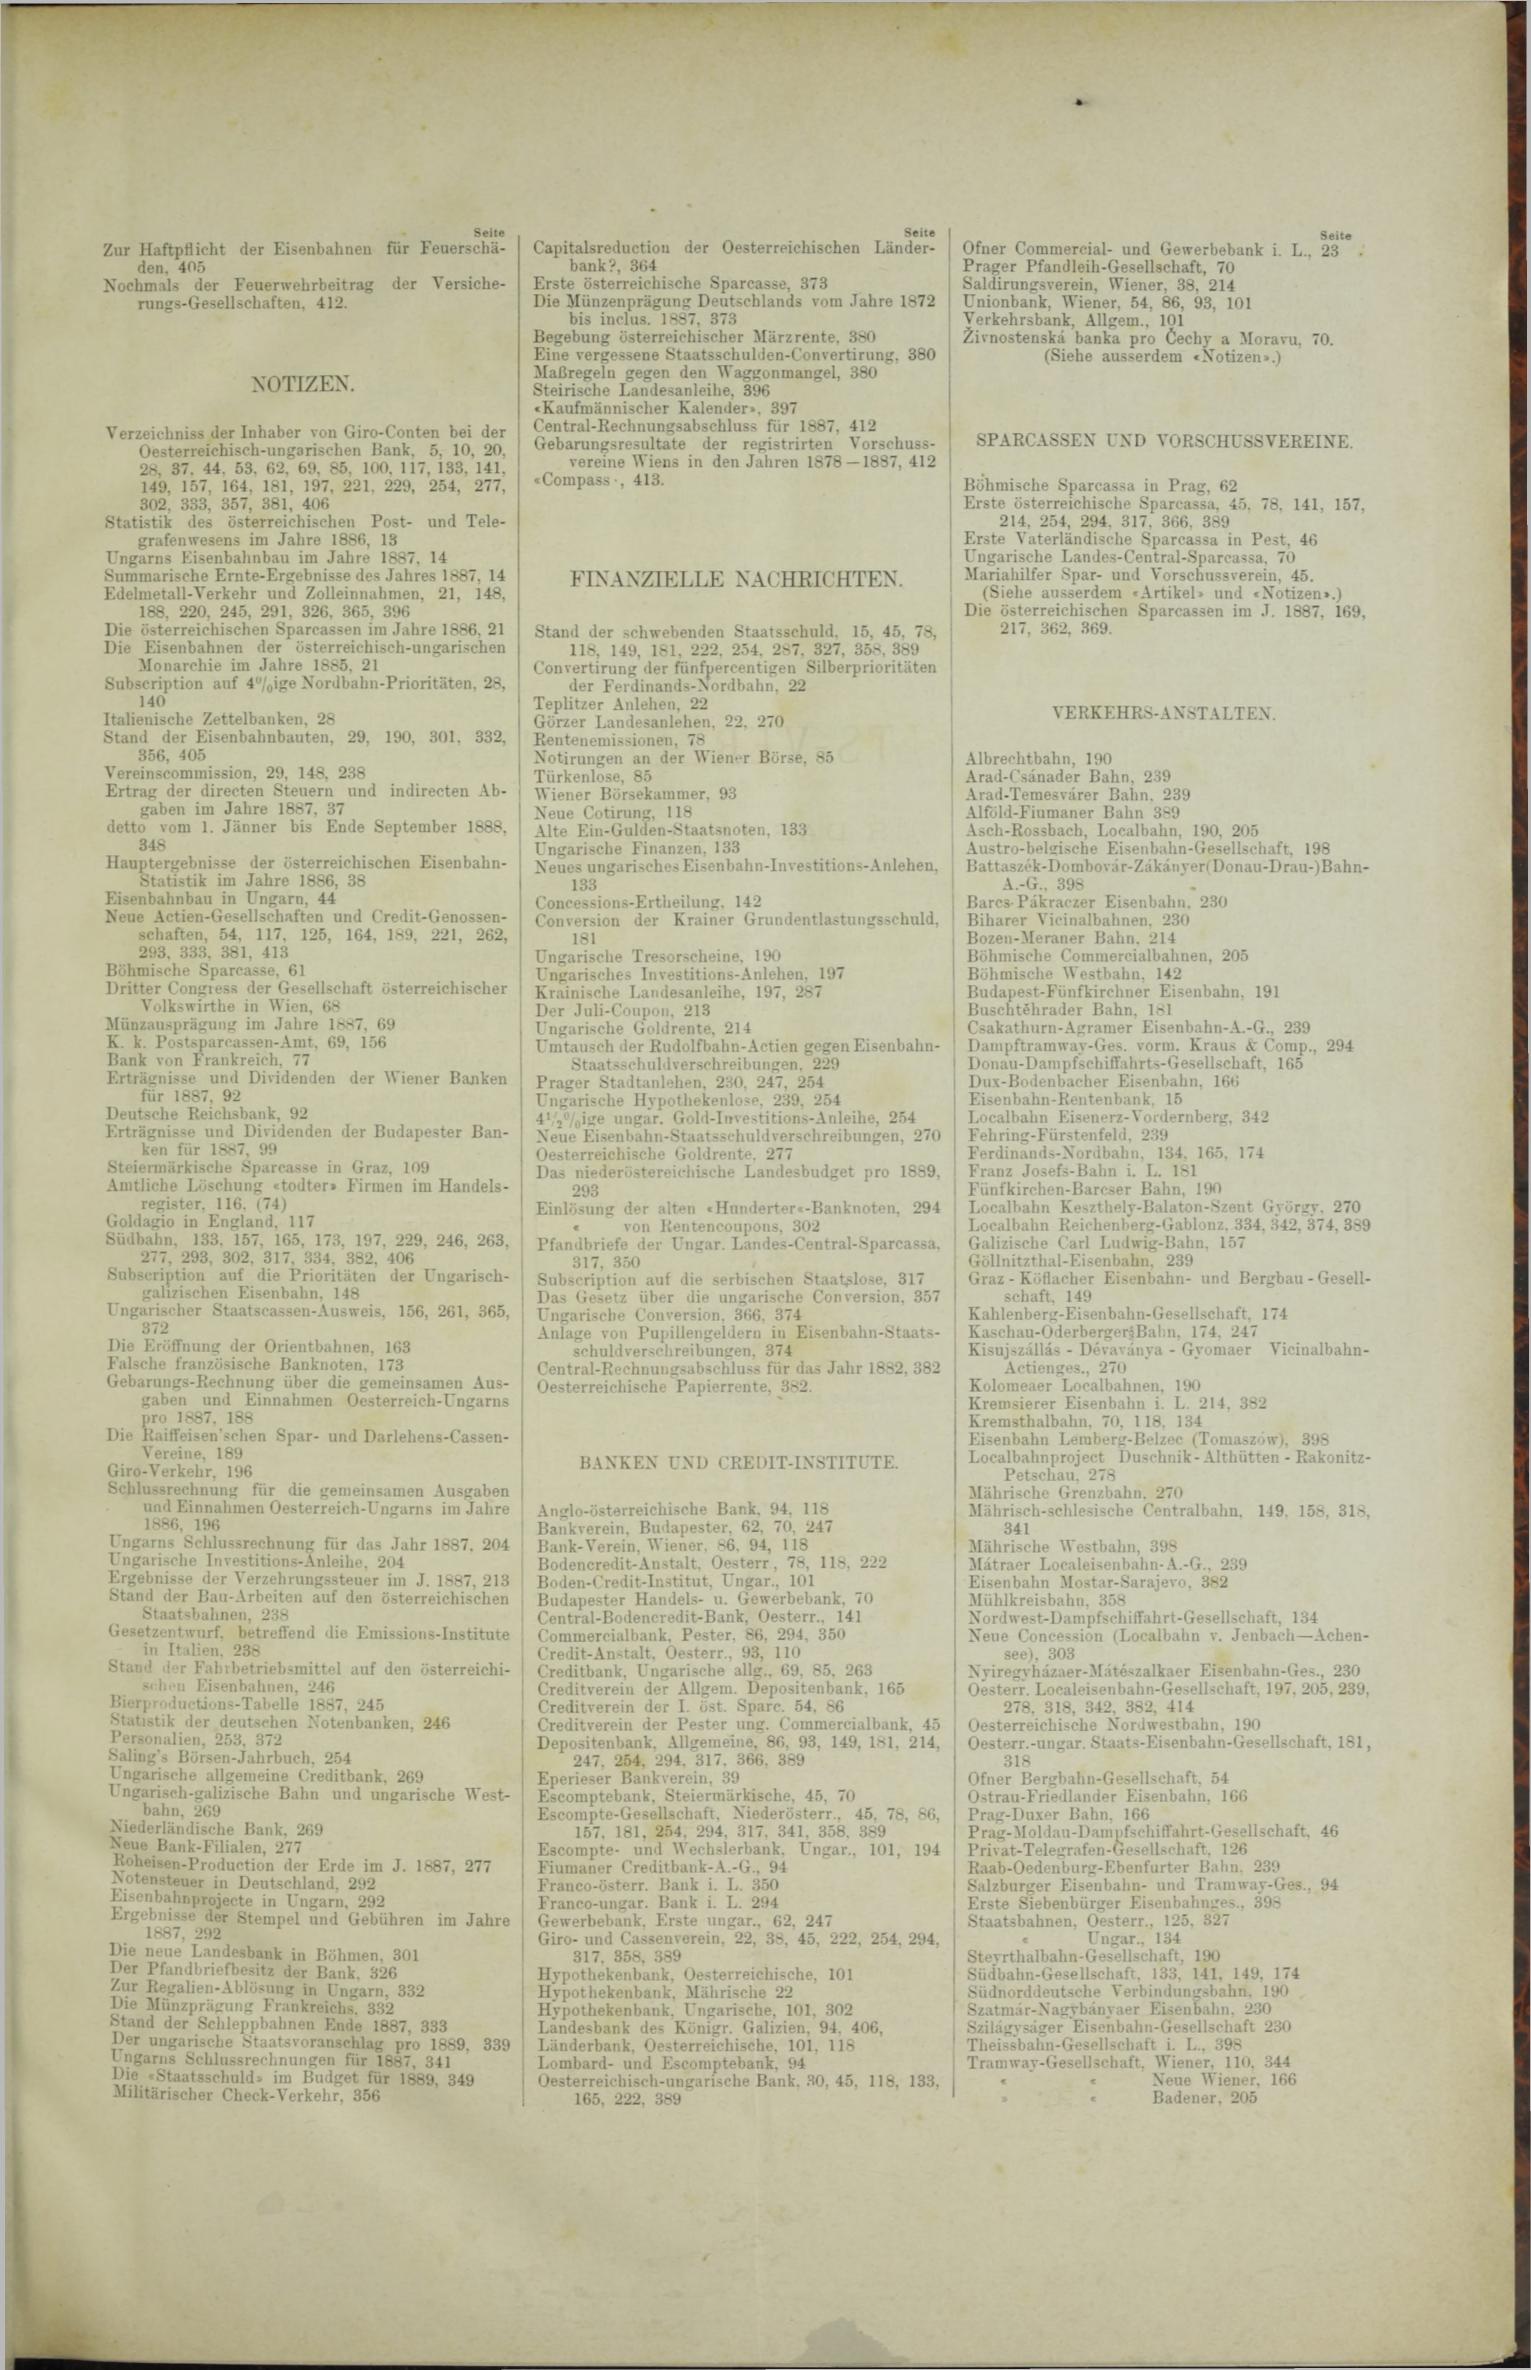 Der Tresor 06.09.1888 - Seite 11